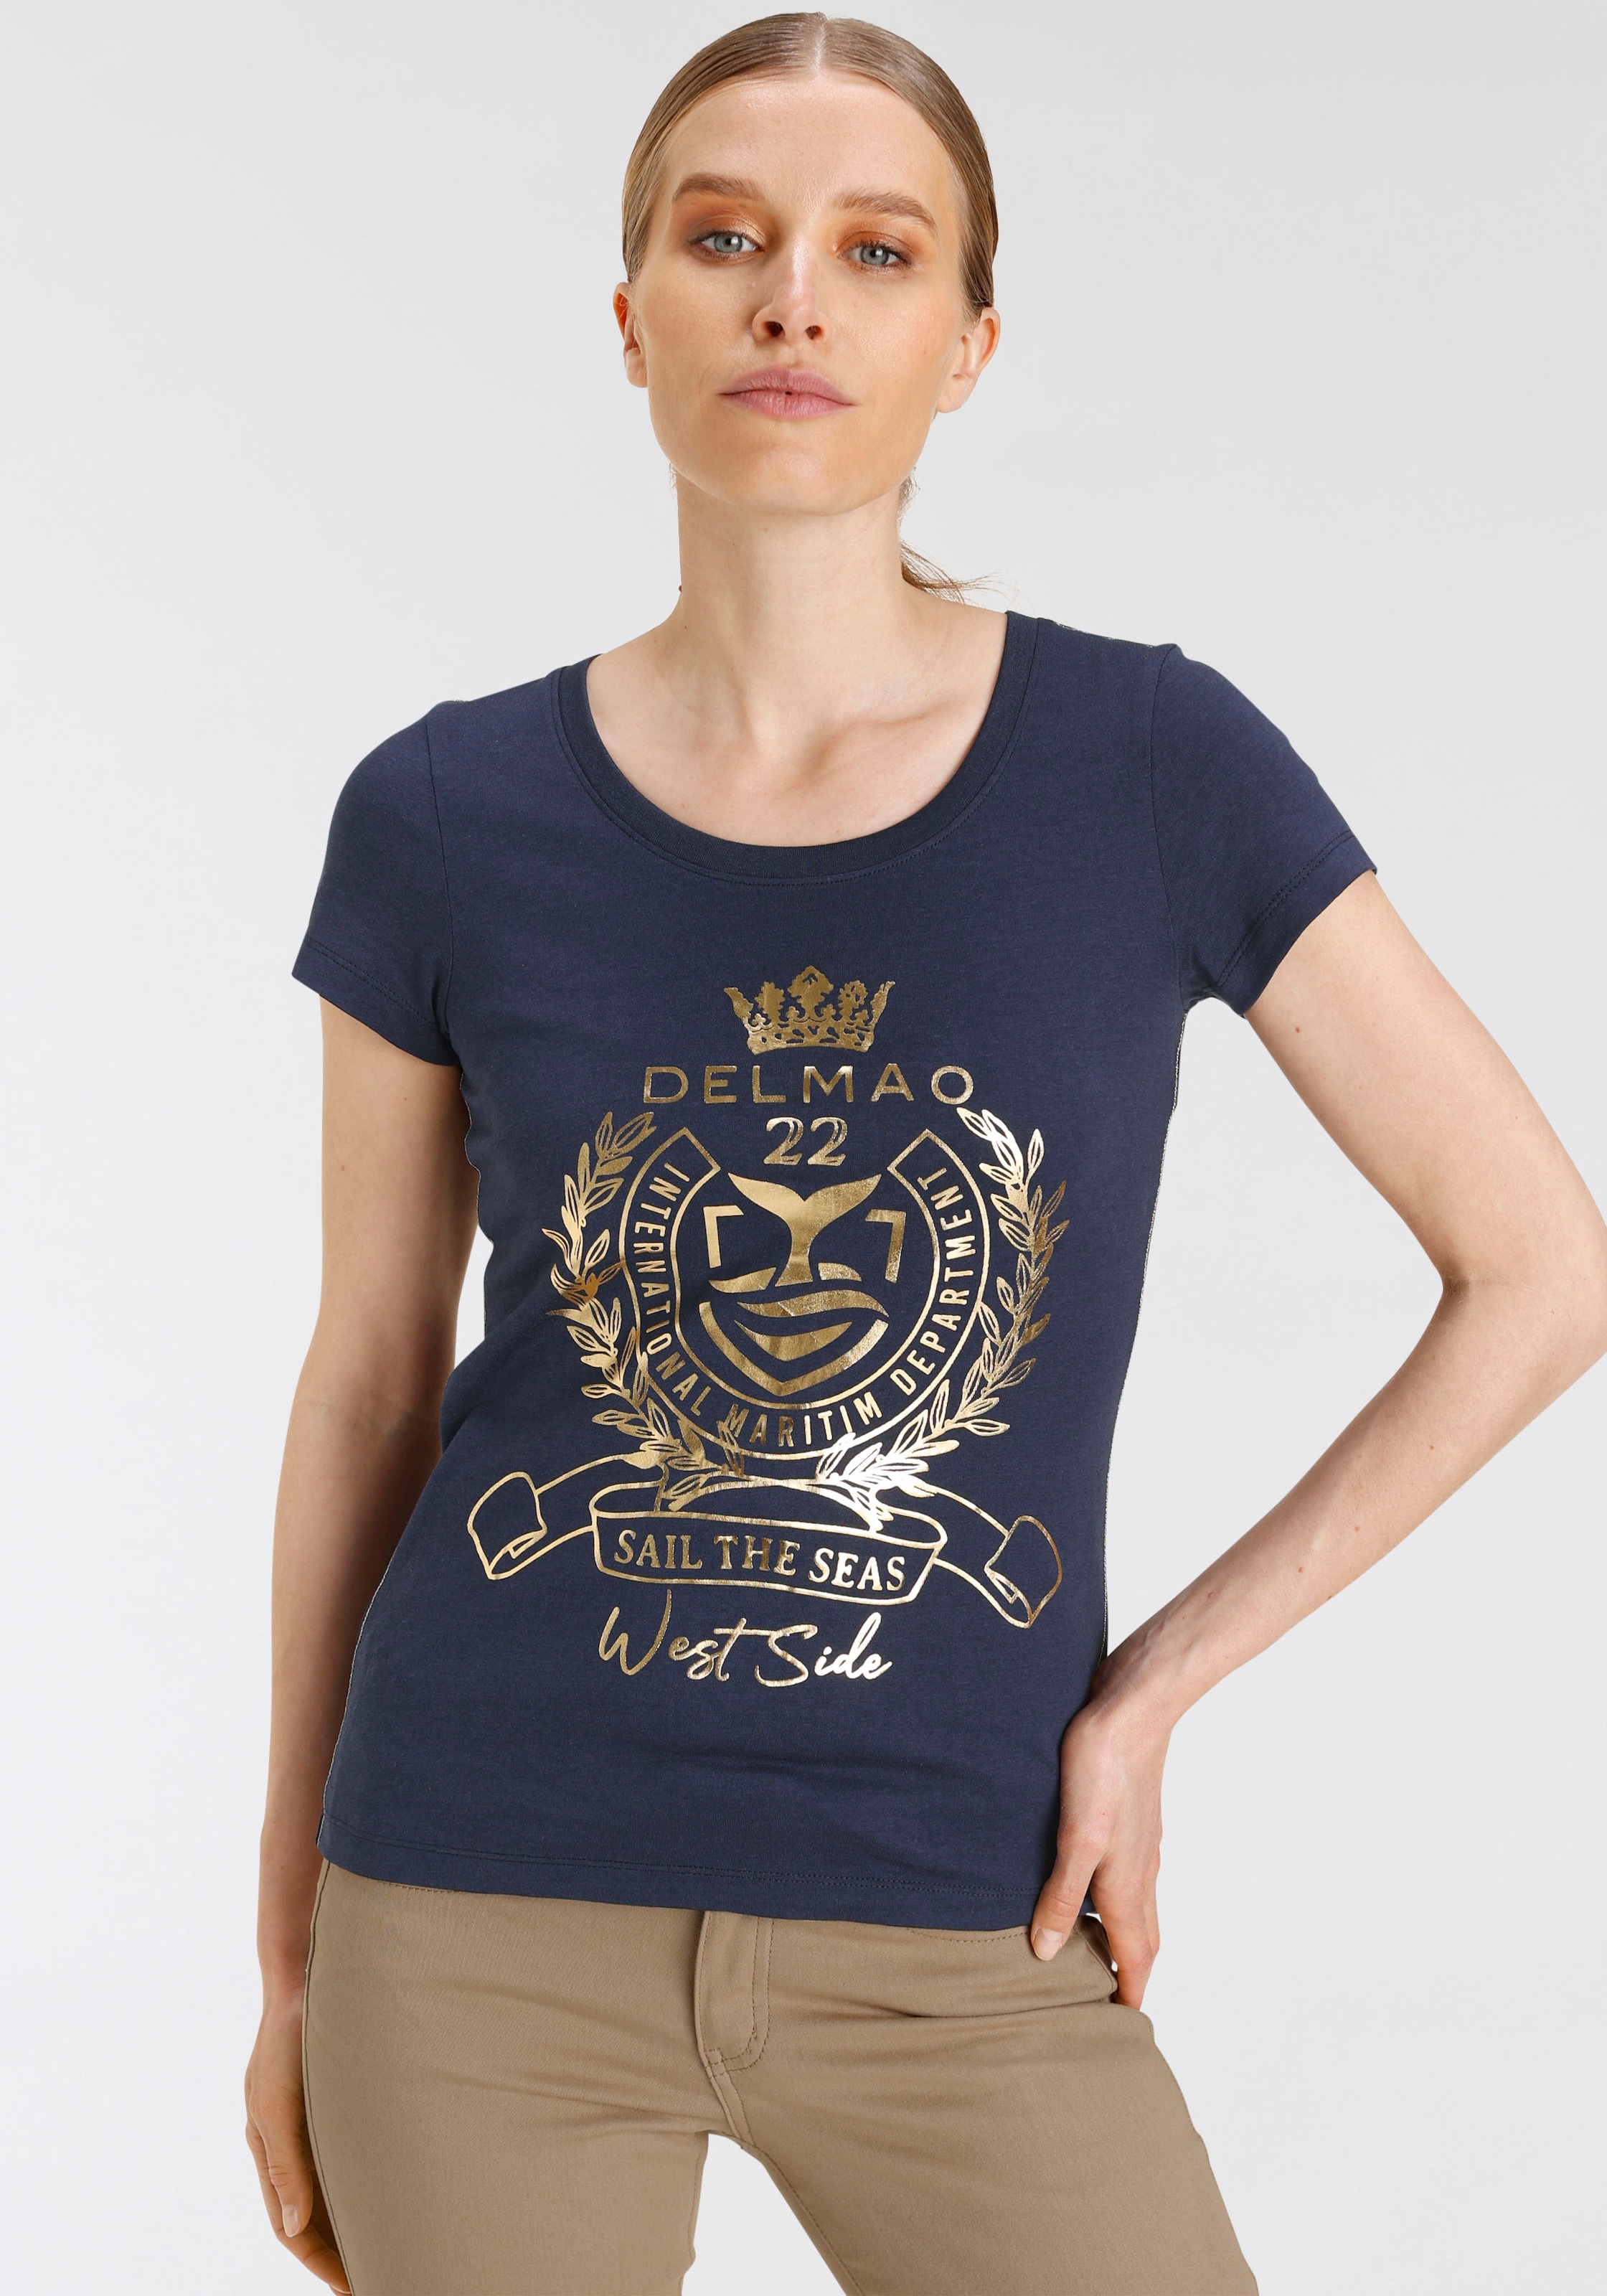 goldfarbenem ♕ MARKE! DELMAO T-Shirt, hochwertigem, bei - NEUE Folienprint mit